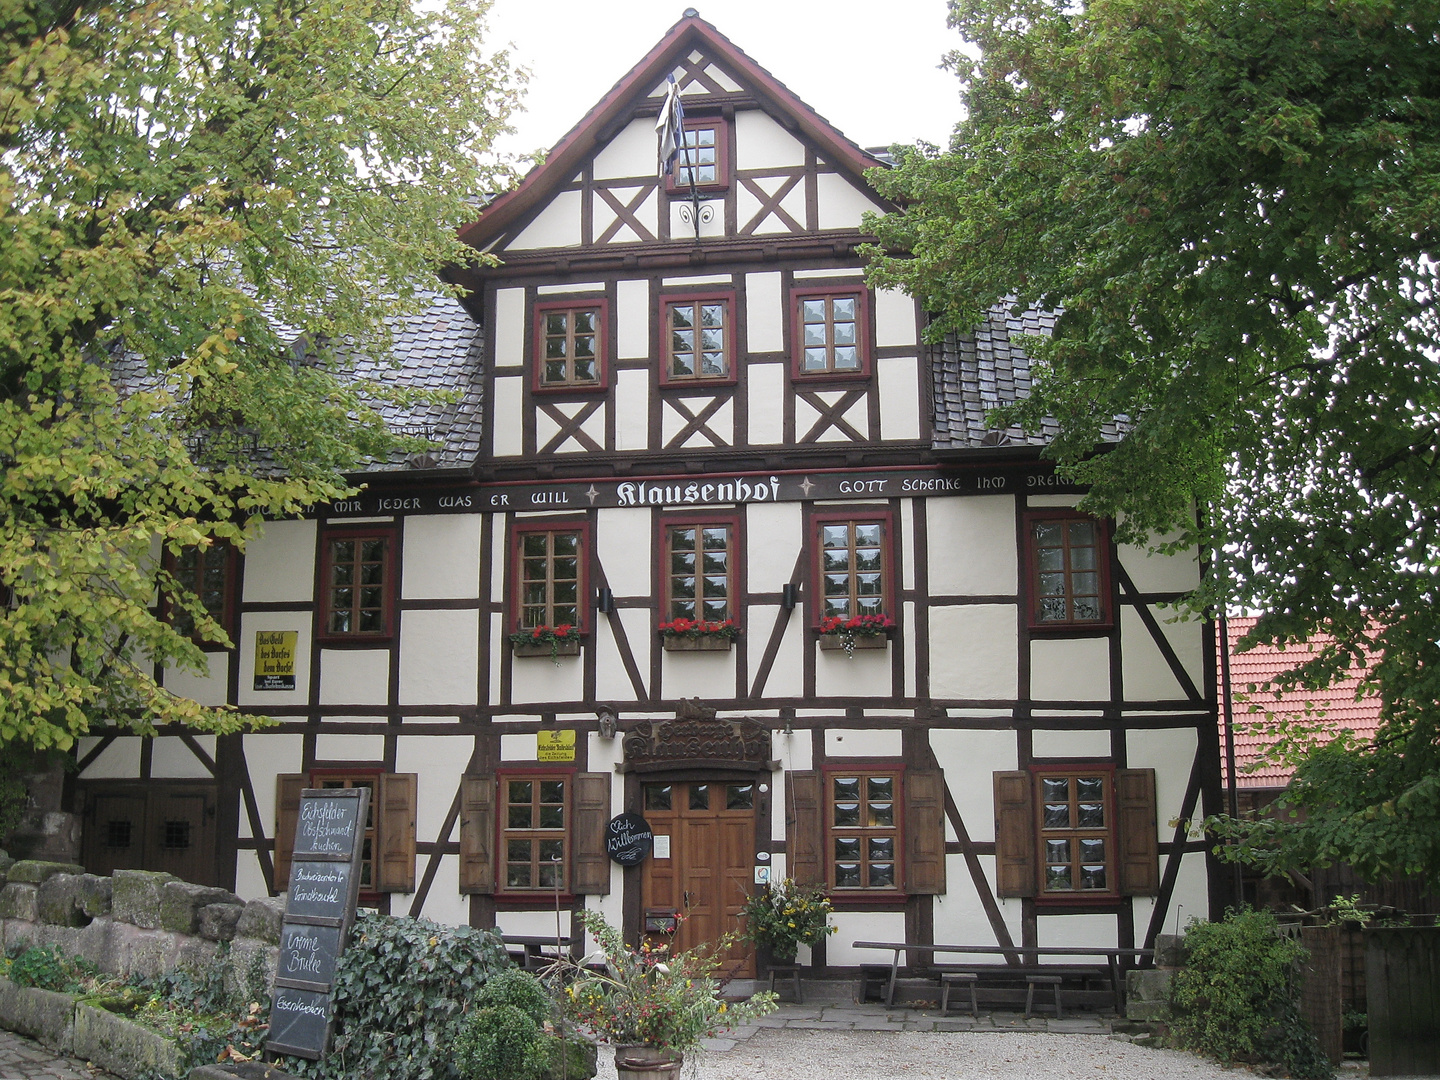 Mittelalterrestaurant "Klausenhof" in Bornhagen unterhalb Burgruine Hanstein